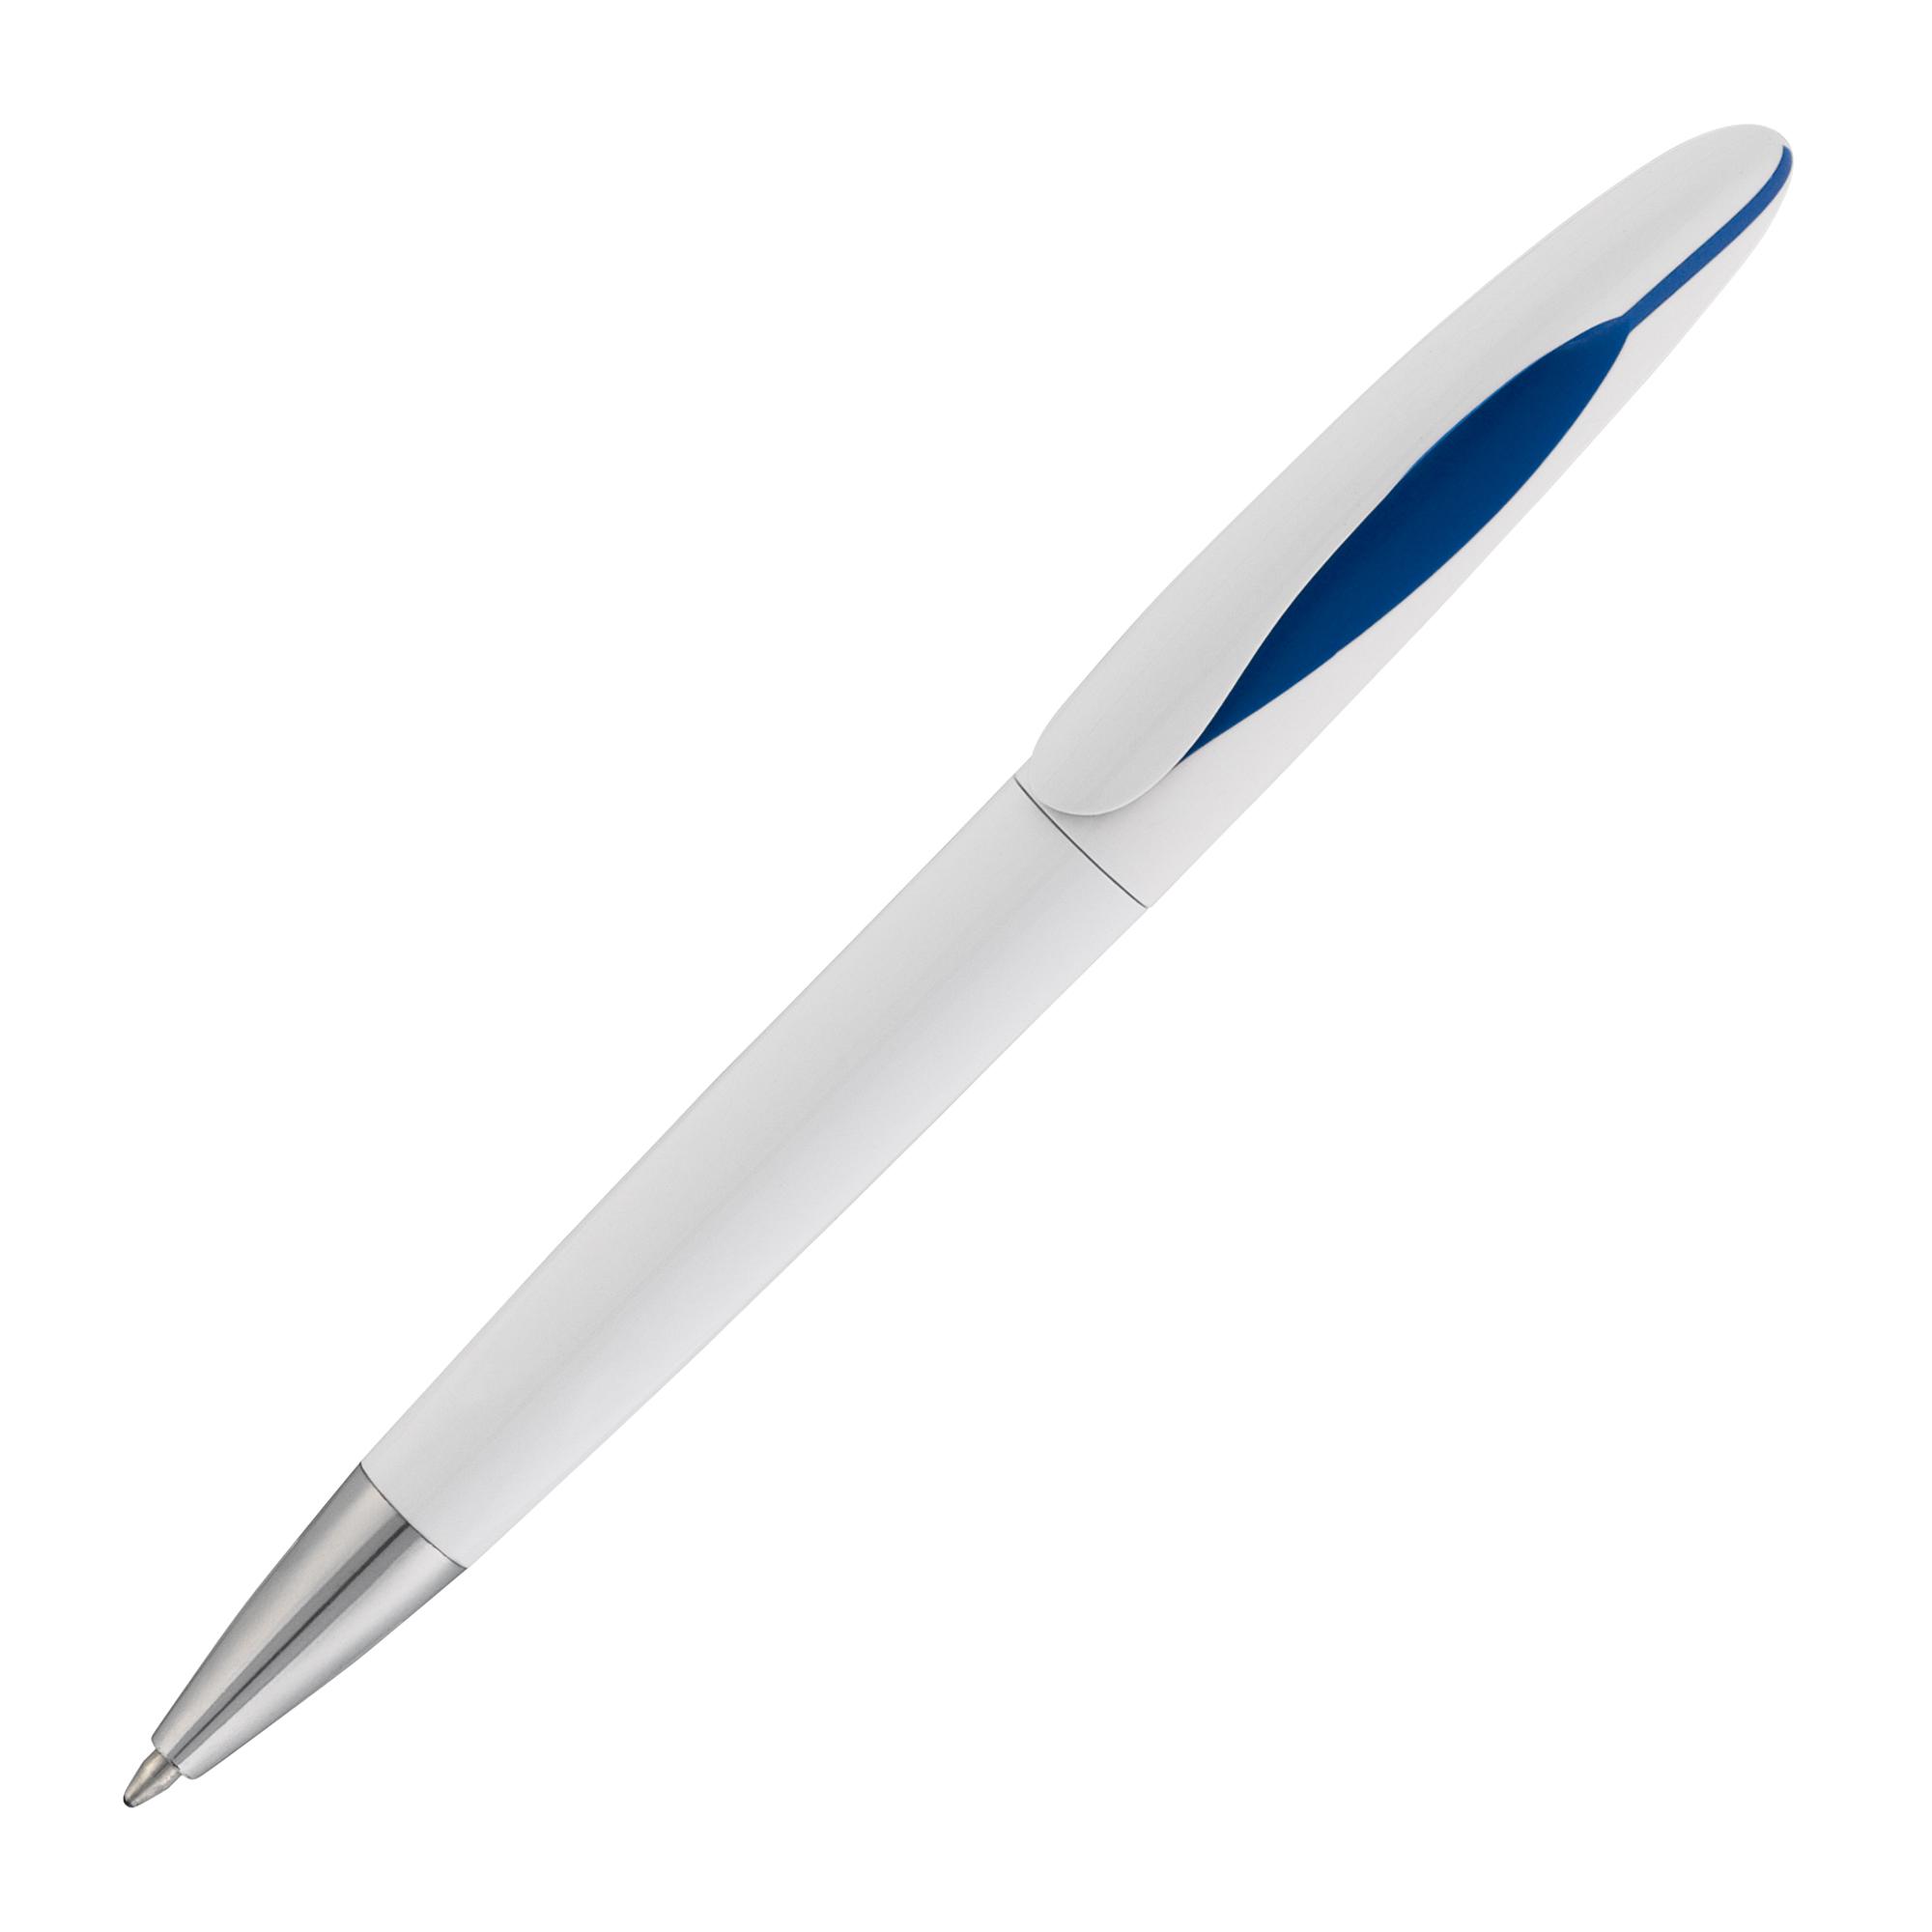 Ручка шариковая COBRA SOFTGRIP MM, цвет темно-синий - купить оптом